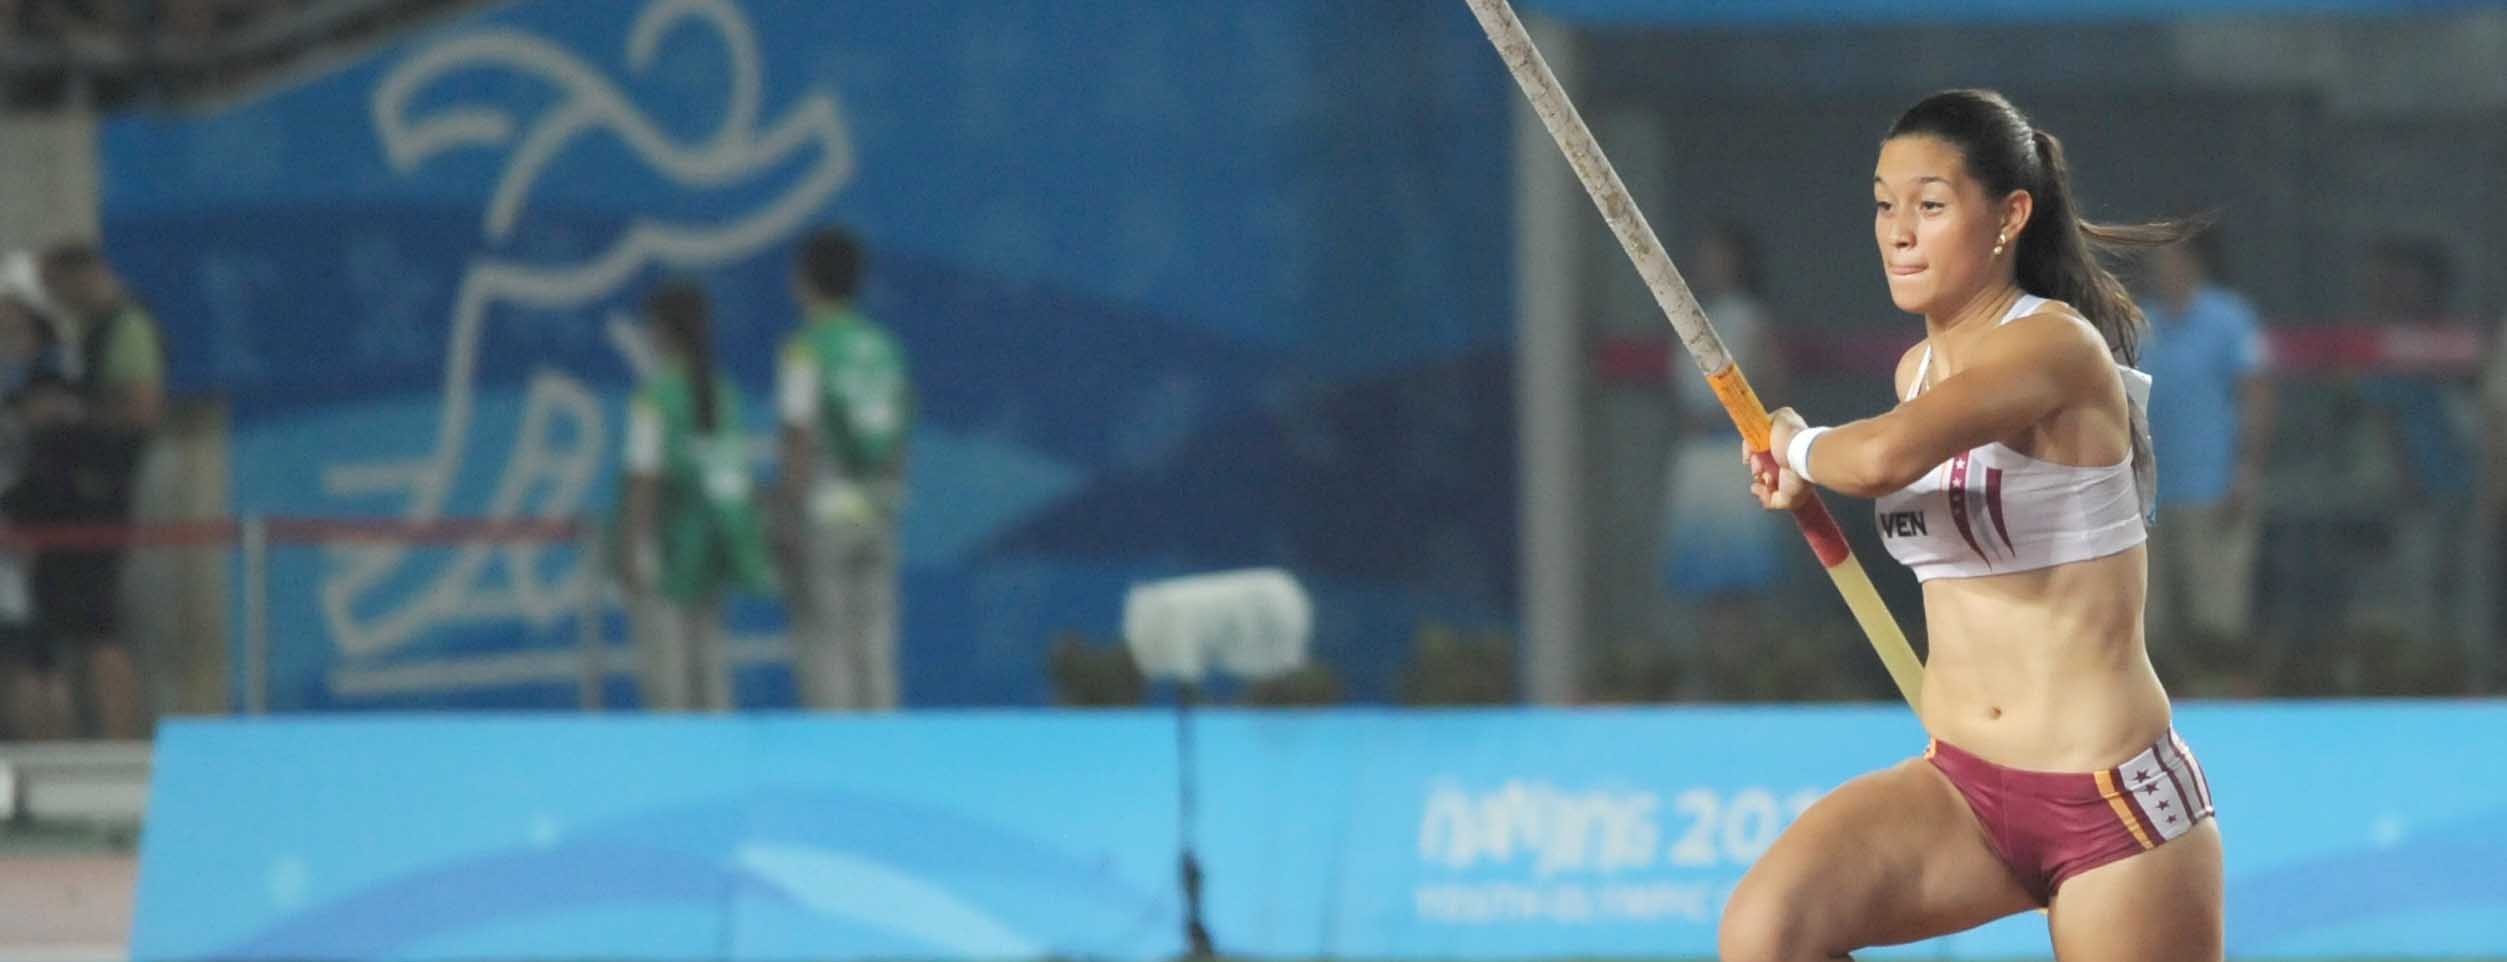 Con una marca de 4.55 se convierte en la primera mujer venezolana en clasificar al máximo evento del atletismo